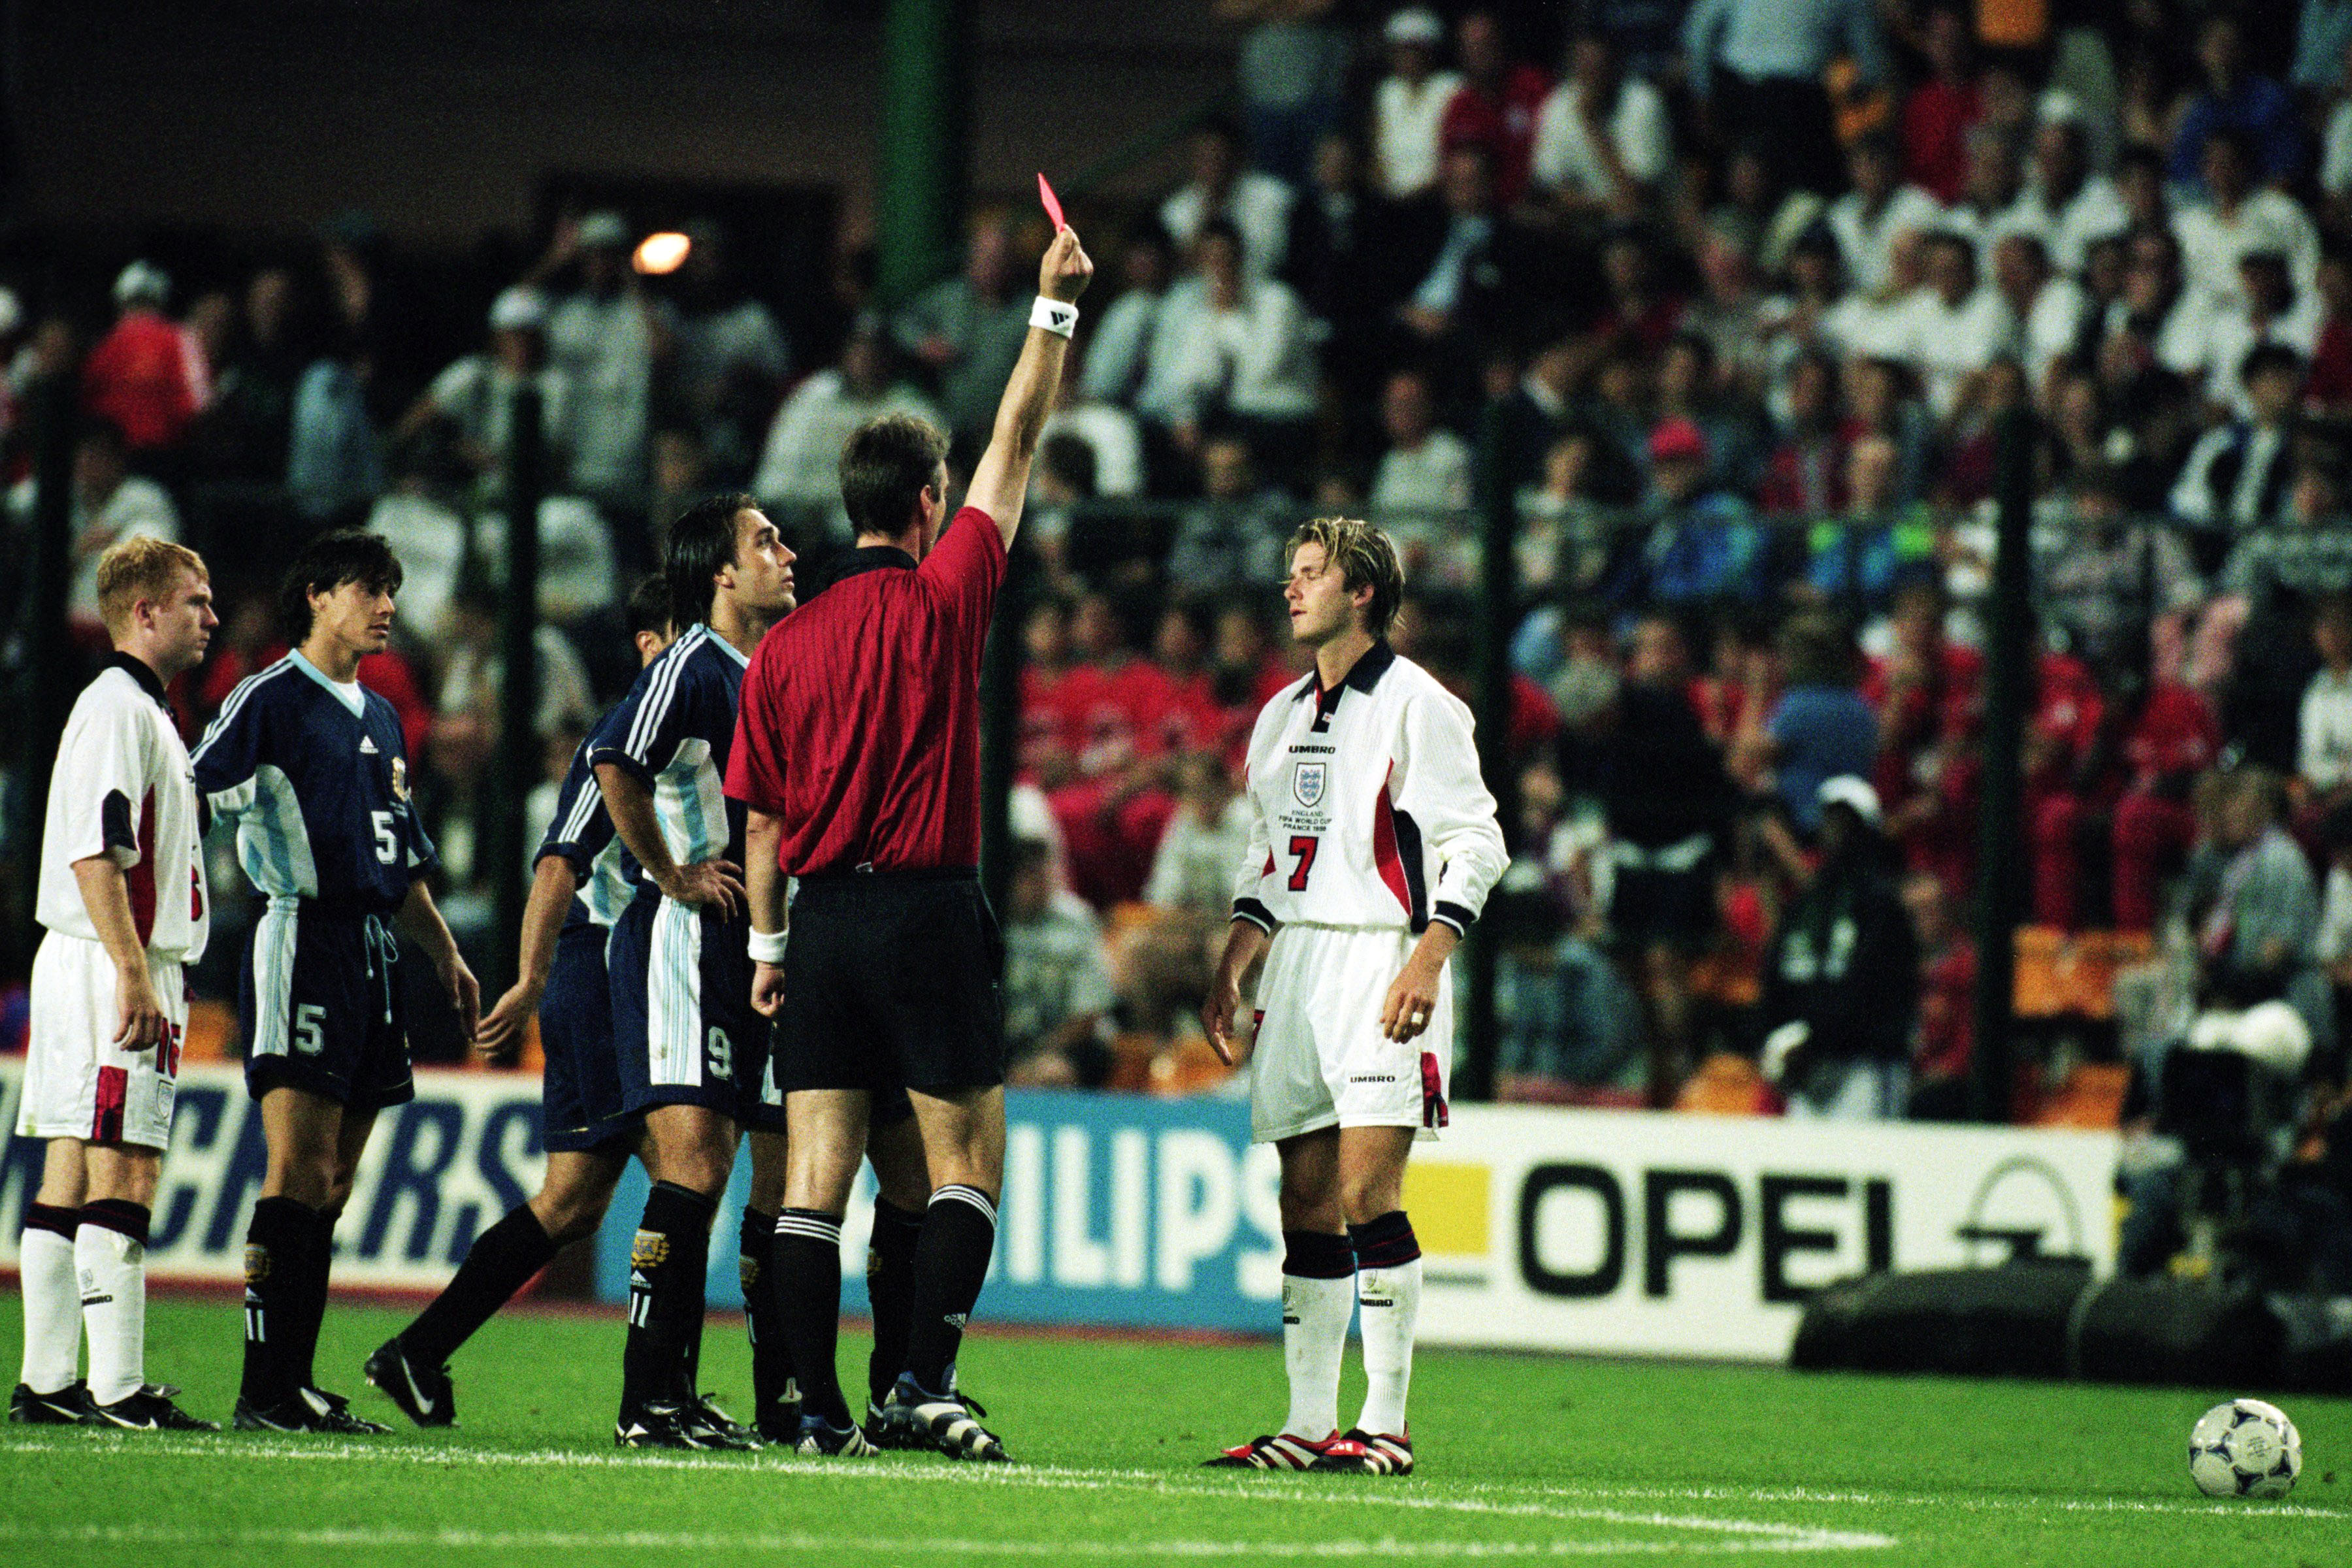 David wurde nach seiner berüchtigten Roten Karte vom Platz gestellt, weil er während der Weltmeisterschaft 1998 den Argentinier Diego Simeone getreten hatte